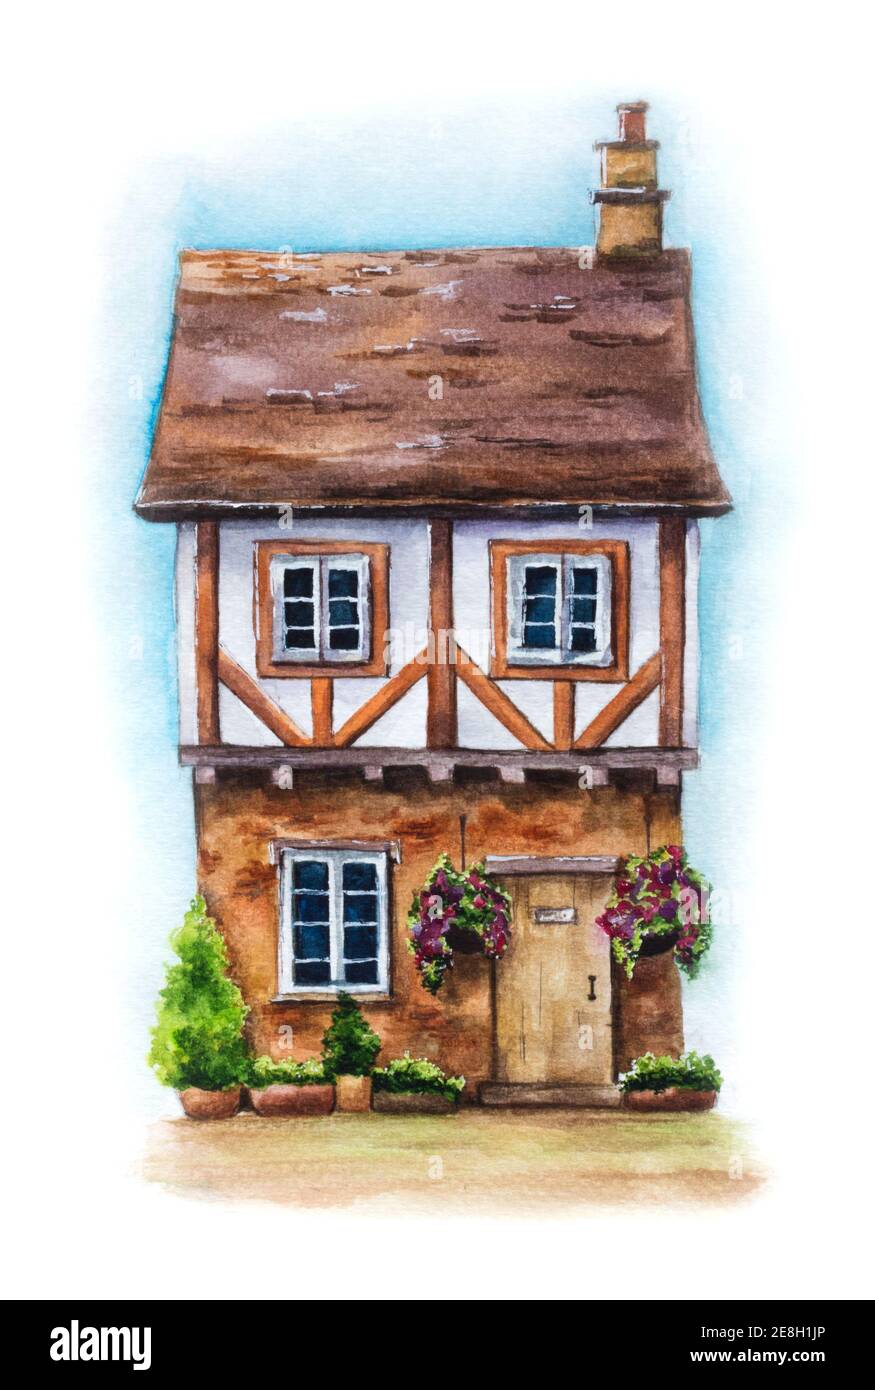 Aquarell-Illustration des traditionellen englischen Hauses isoliert auf weißem Hintergrund. Handgezeichnetes niedliches Dorfhaus mit hängenden Blumen, Pflanzen und Himmel Stockfoto